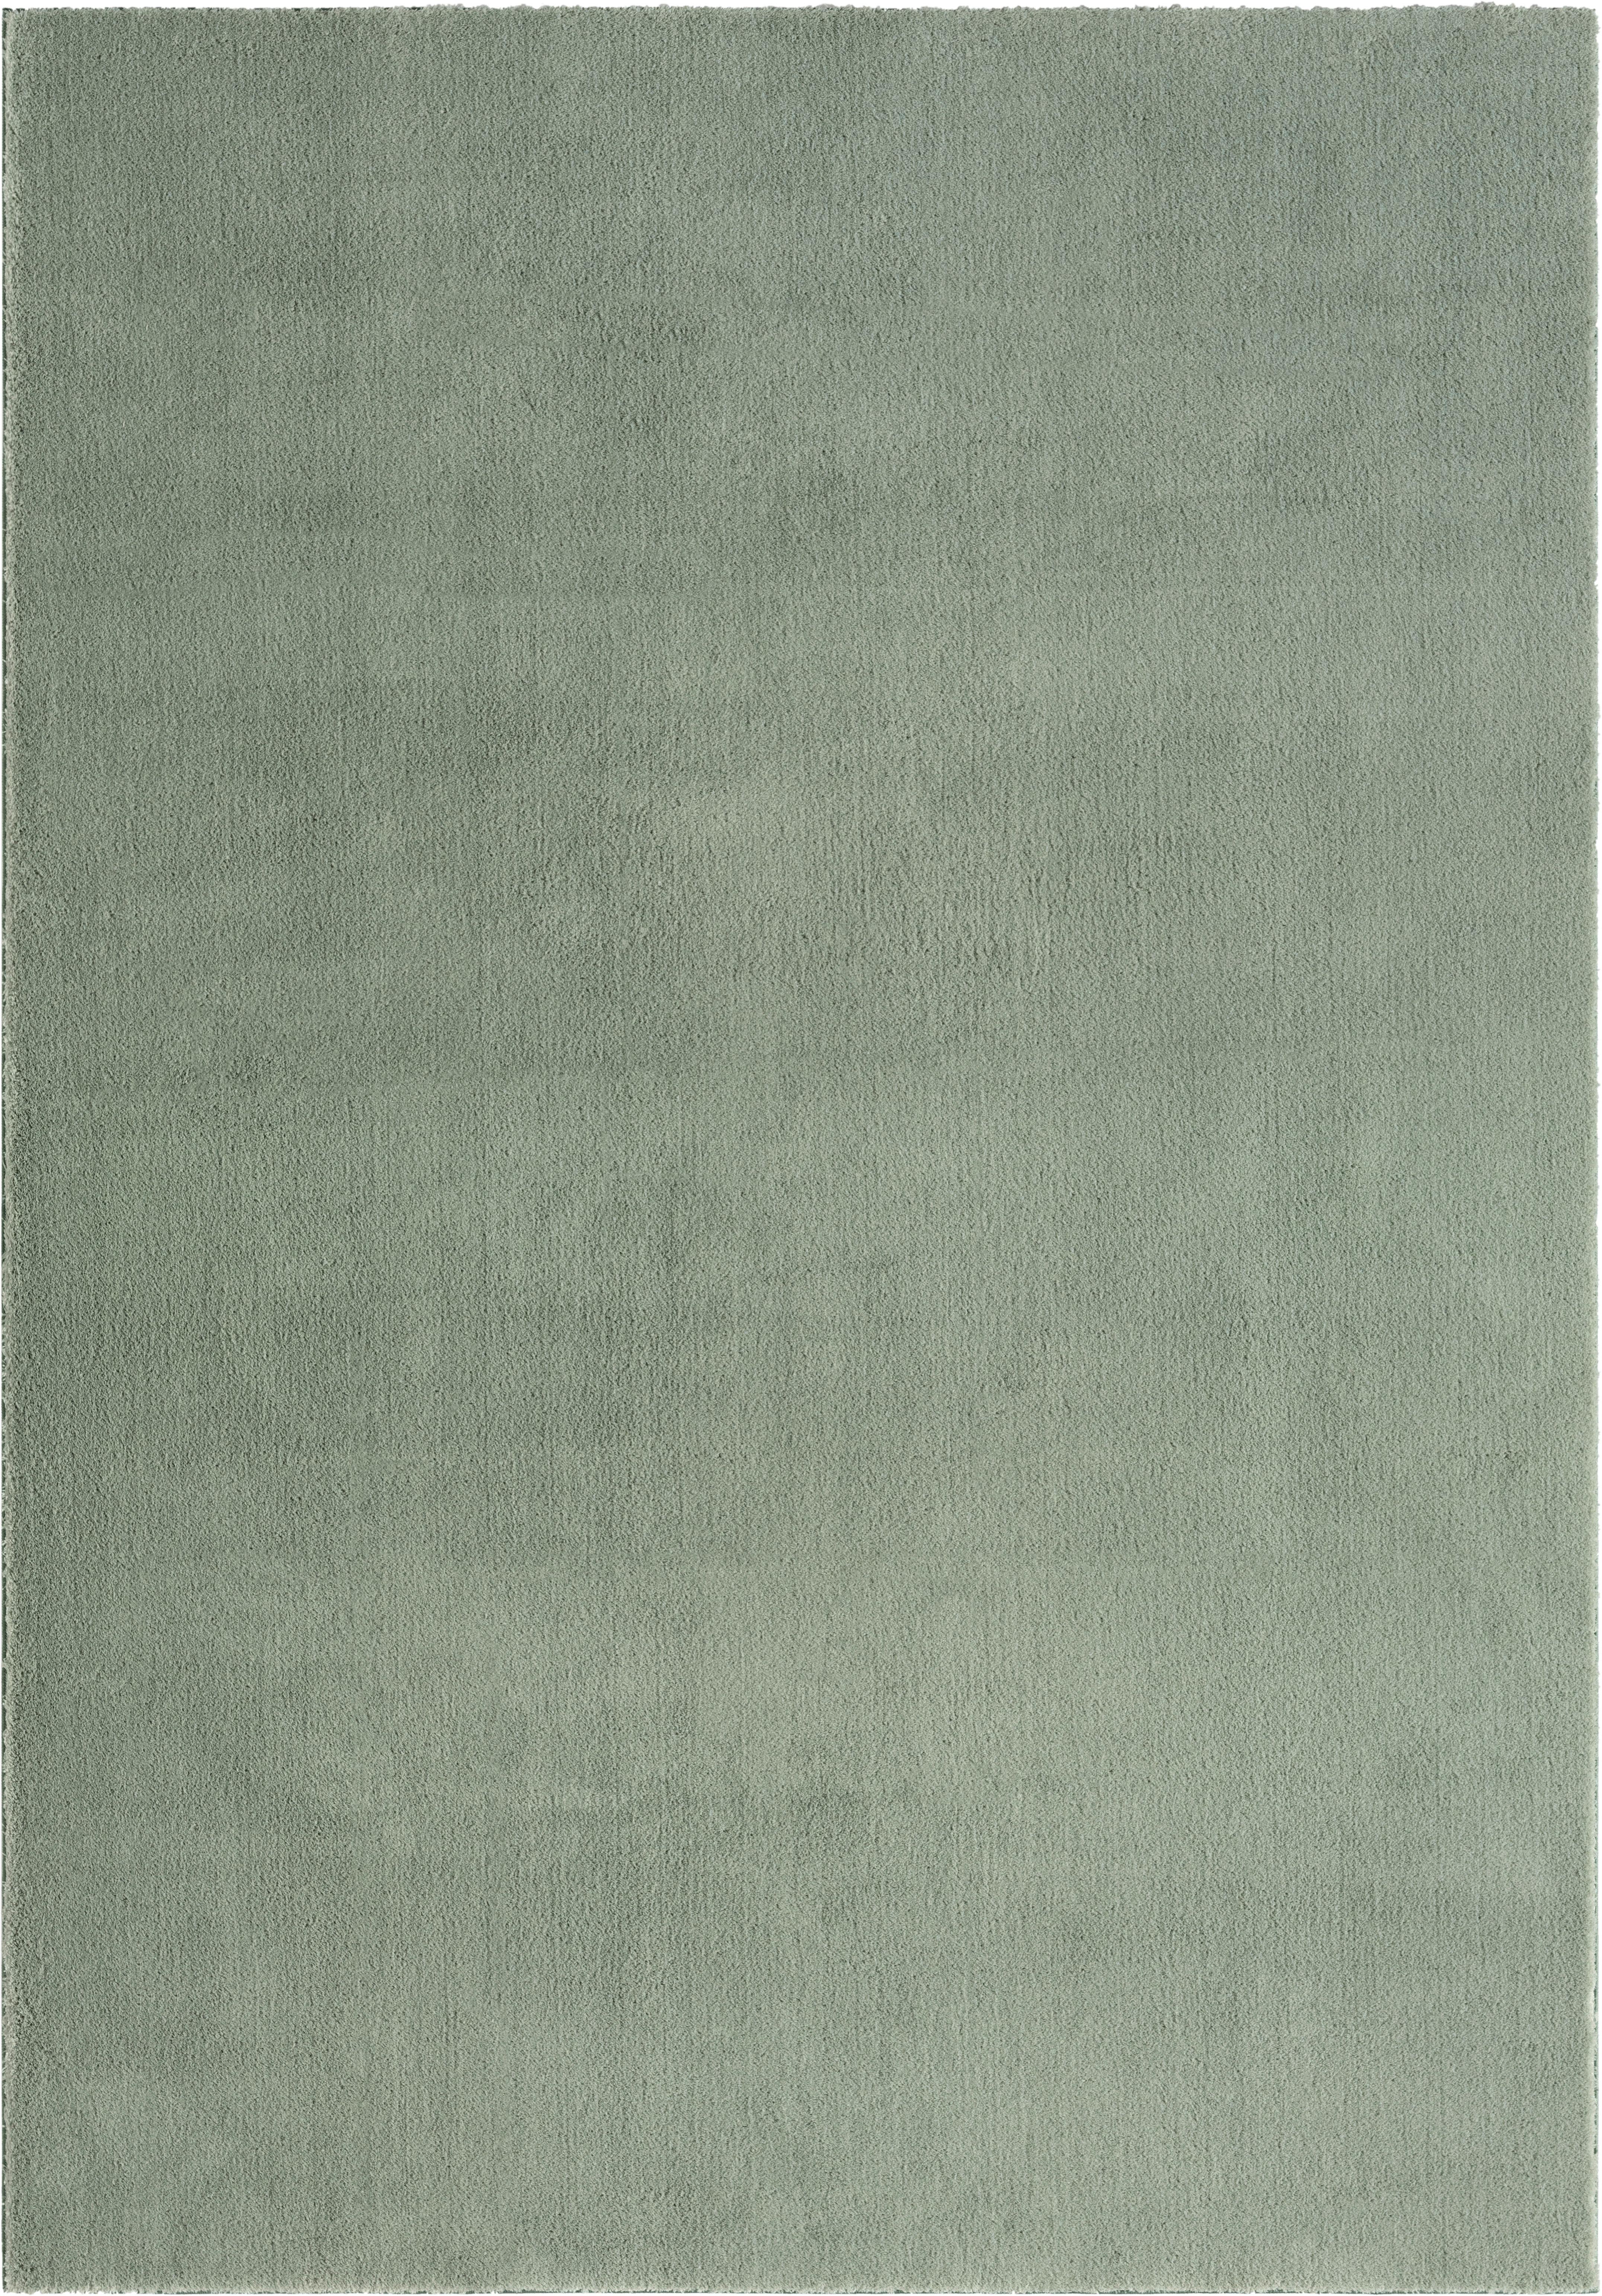 Tepih 60/180cm Nemo - zelena, Konventionell, tekstil (60/180cm) - Modern Living